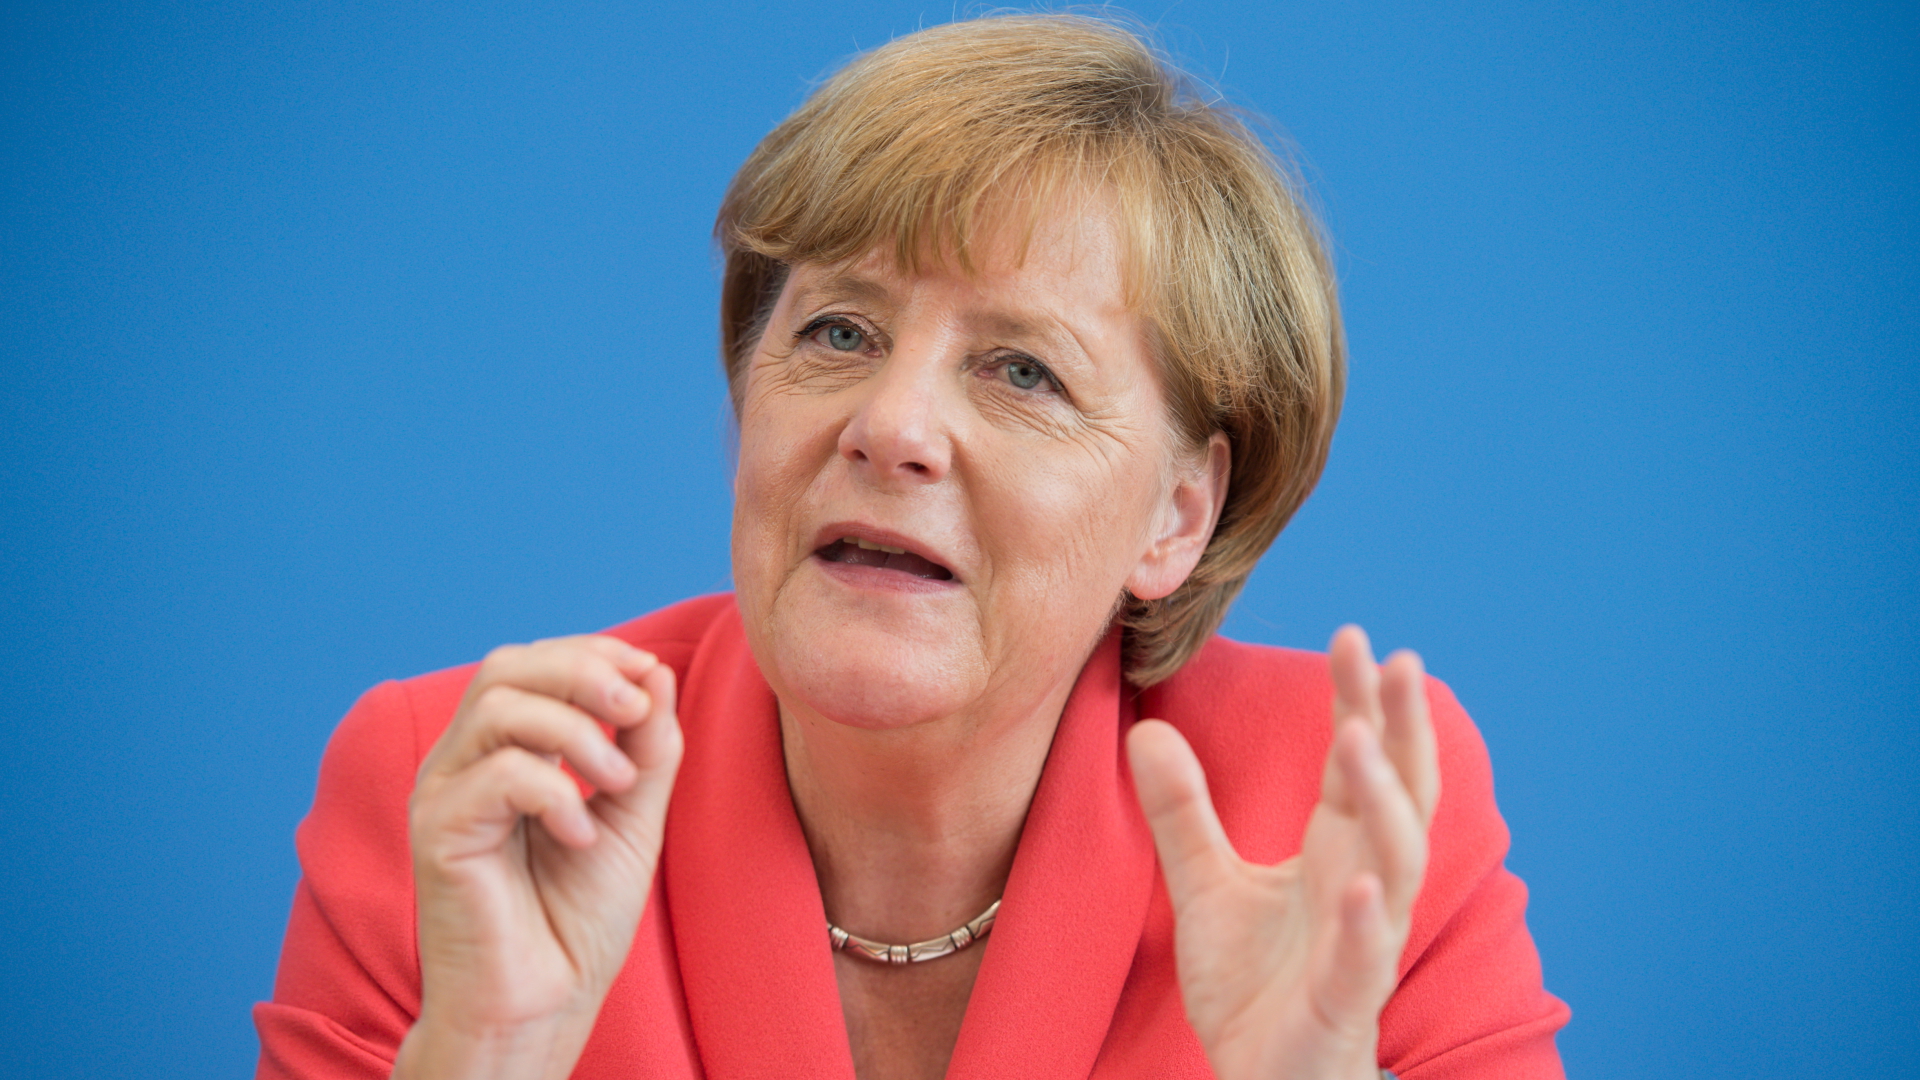 Am 25. August 2015 hält Bundeskanzlerin Merkel eine Pressekonferenz ab, in der sie mit Blick auf die Flüchtlingskrise sagt: "Wir schaffen das." | dpa